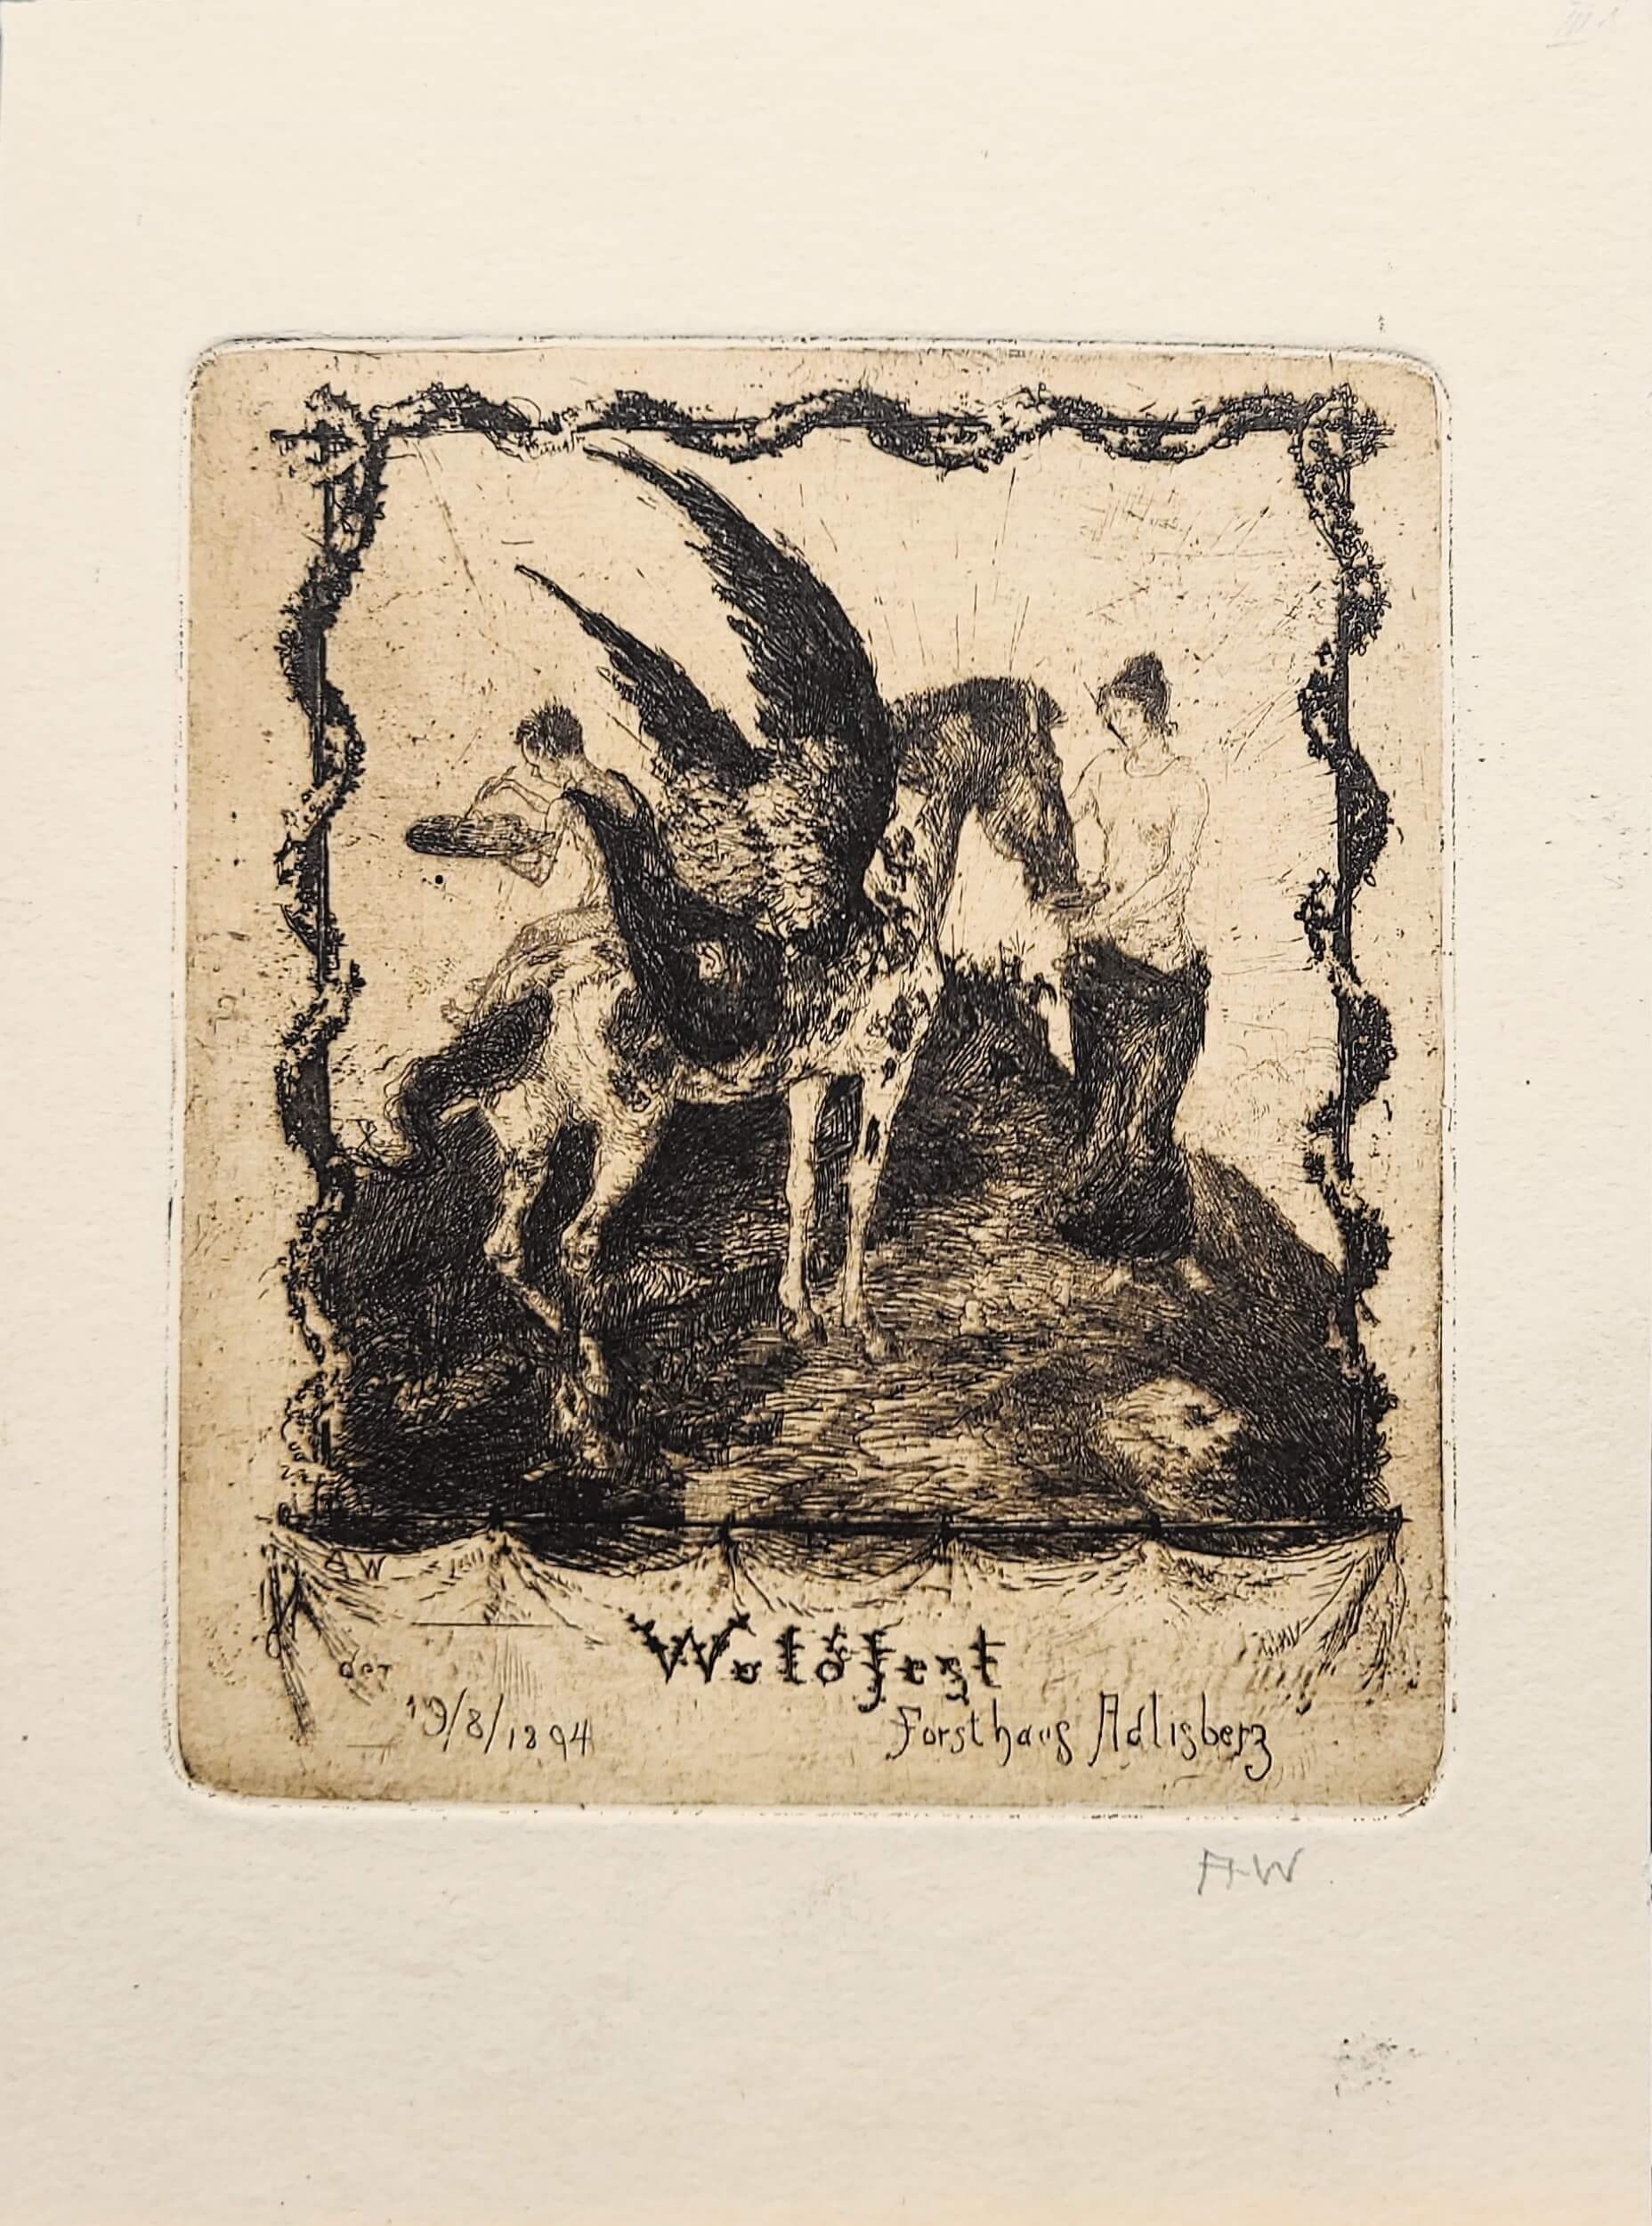 Radierung von Albert Welti "Waldfest" mit Pegasus